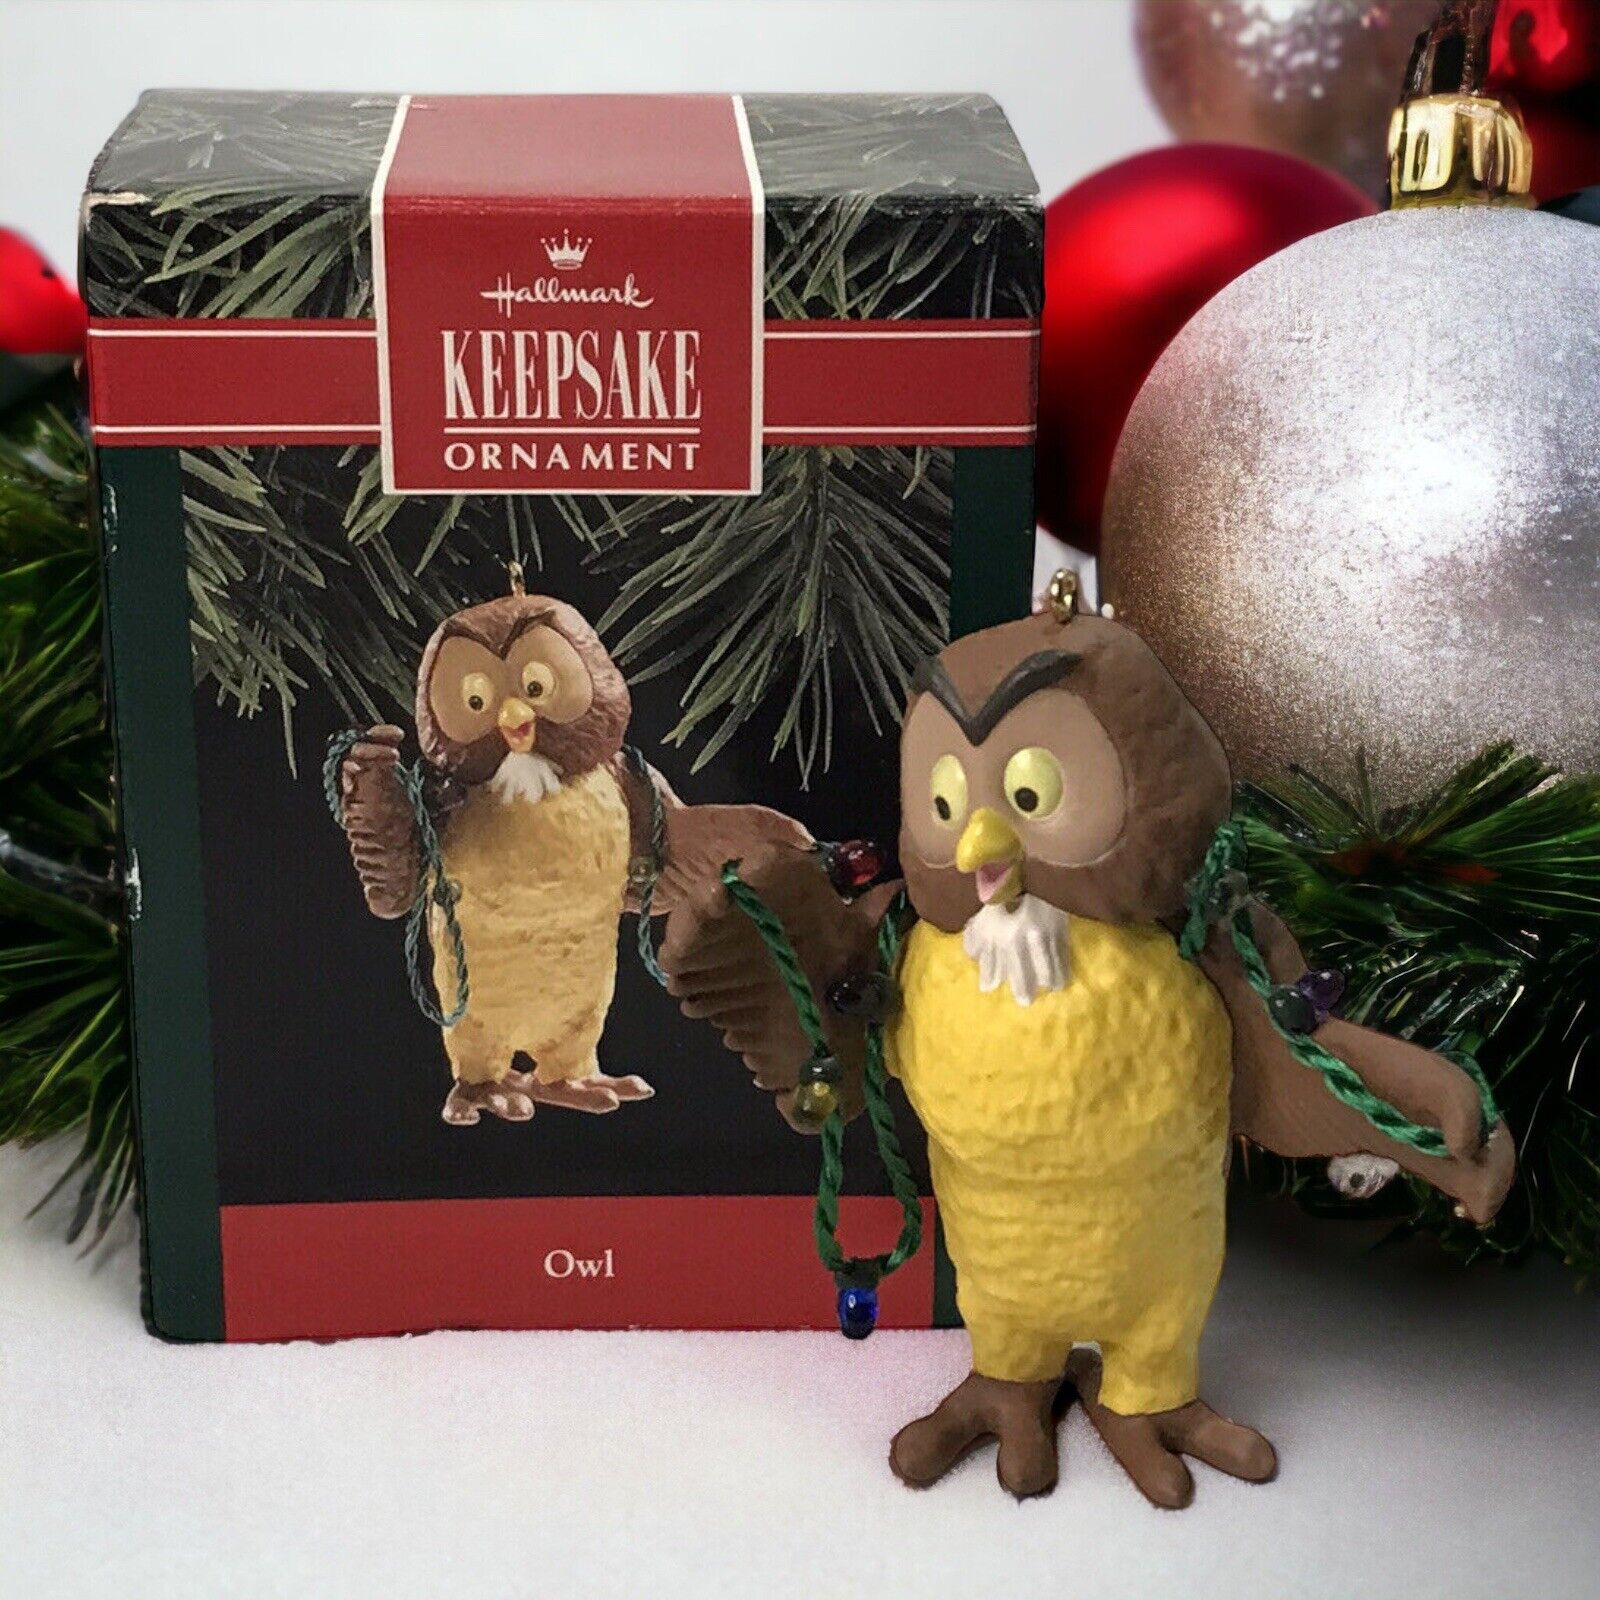 Vintage Hallmark Keepsake Ornament 1992 “OWL” Winnie The Pooh w/Box